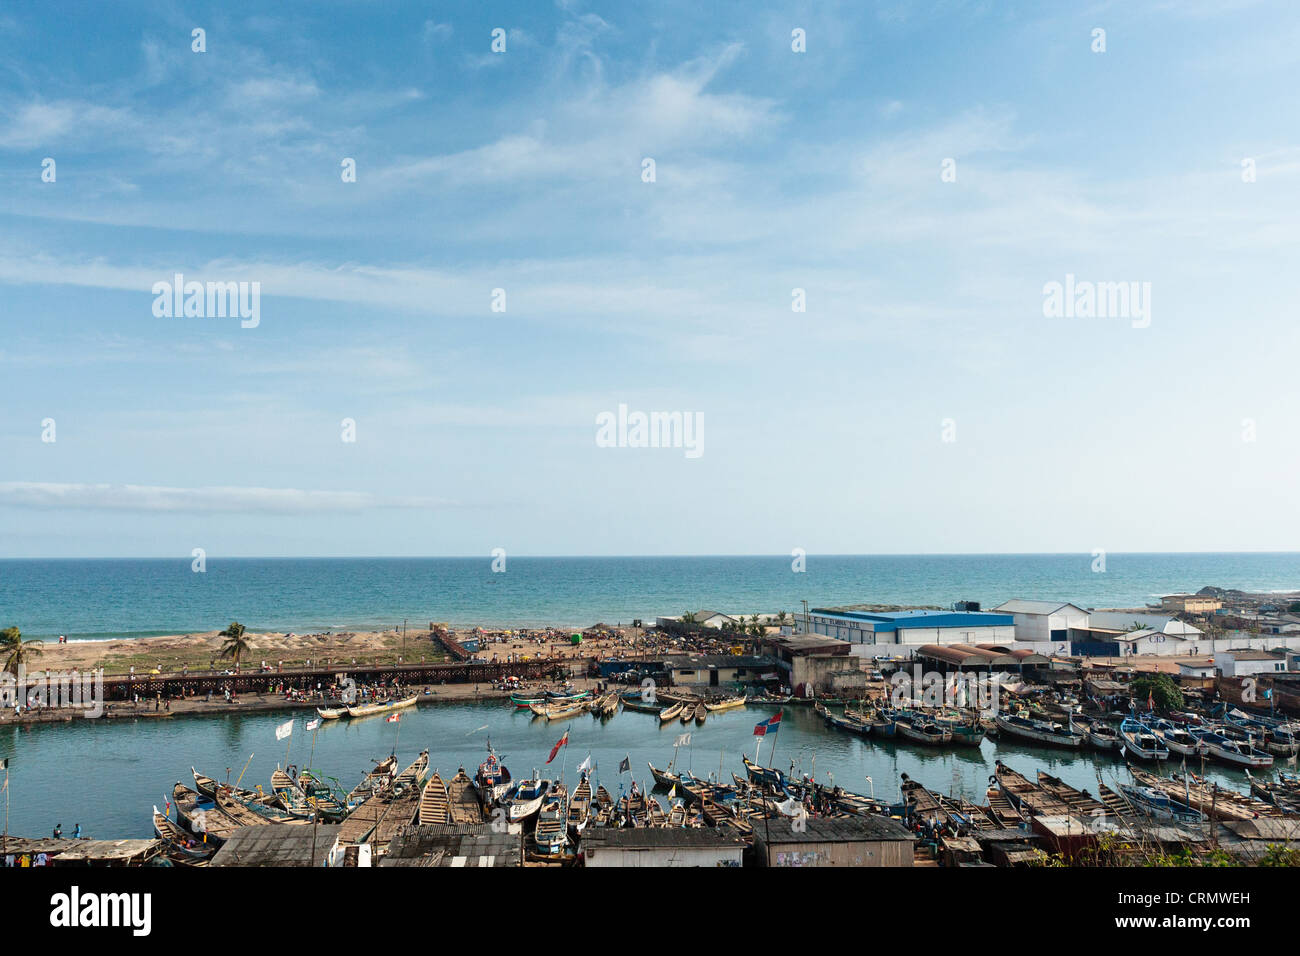 Vista del puerto pesquero de Elmina, aproximadamente a 130 km al oeste de la capital de Ghana, Accra, el jueves 9 de abril de 2009. Foto de stock